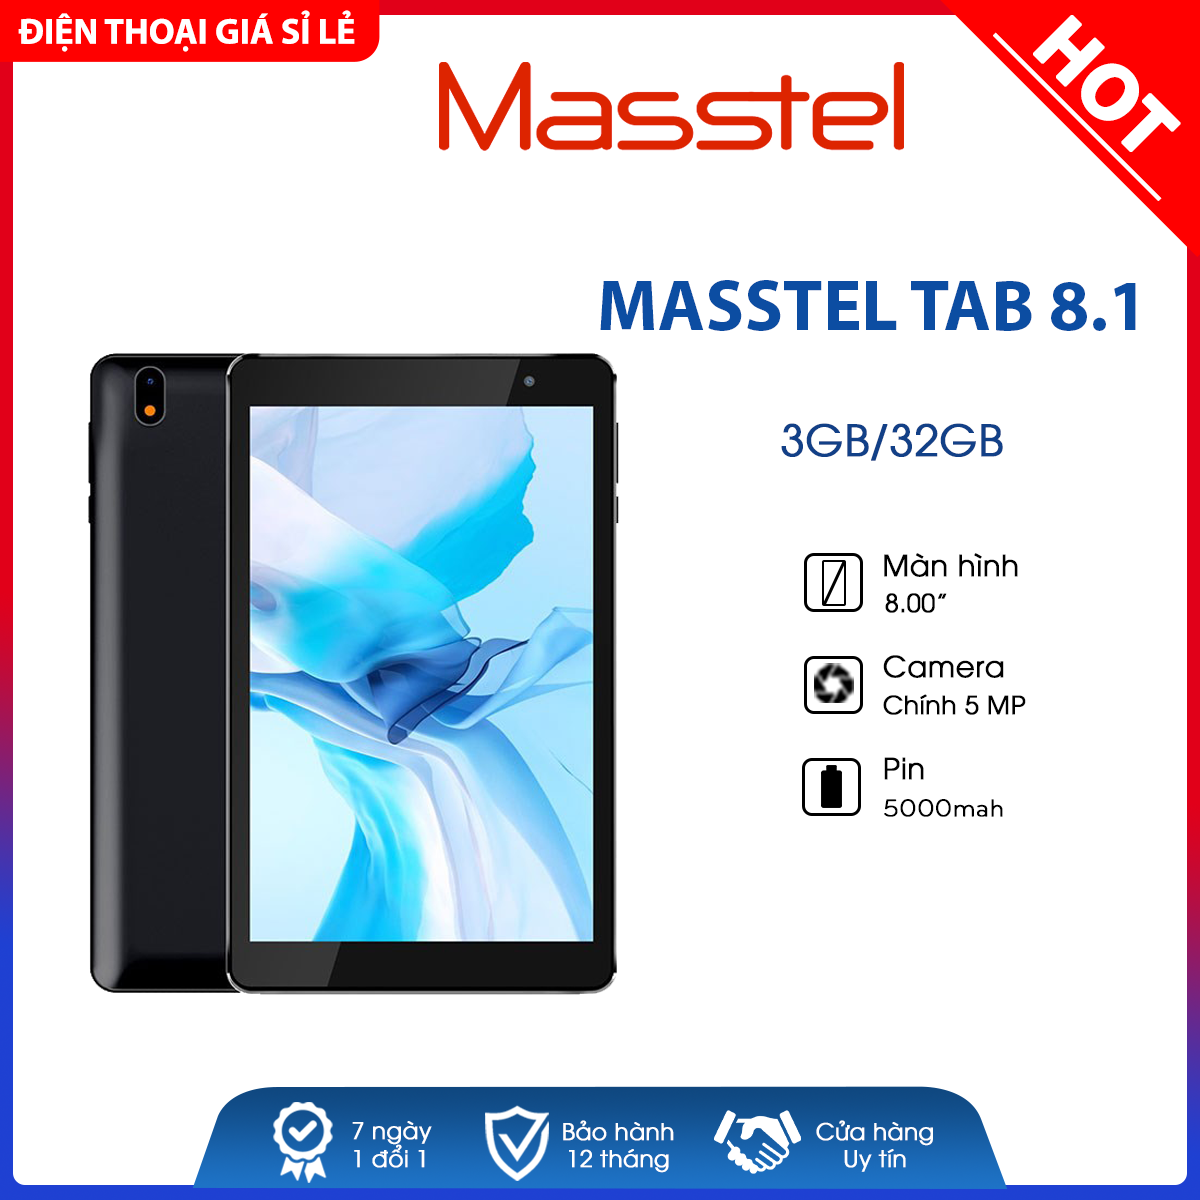 Máy tính bảng Masstel Tab 8.1 4G (3GB/32GB) - Mới 100%, Nguyên Seal - Bảo hành chính hãng 12 tháng